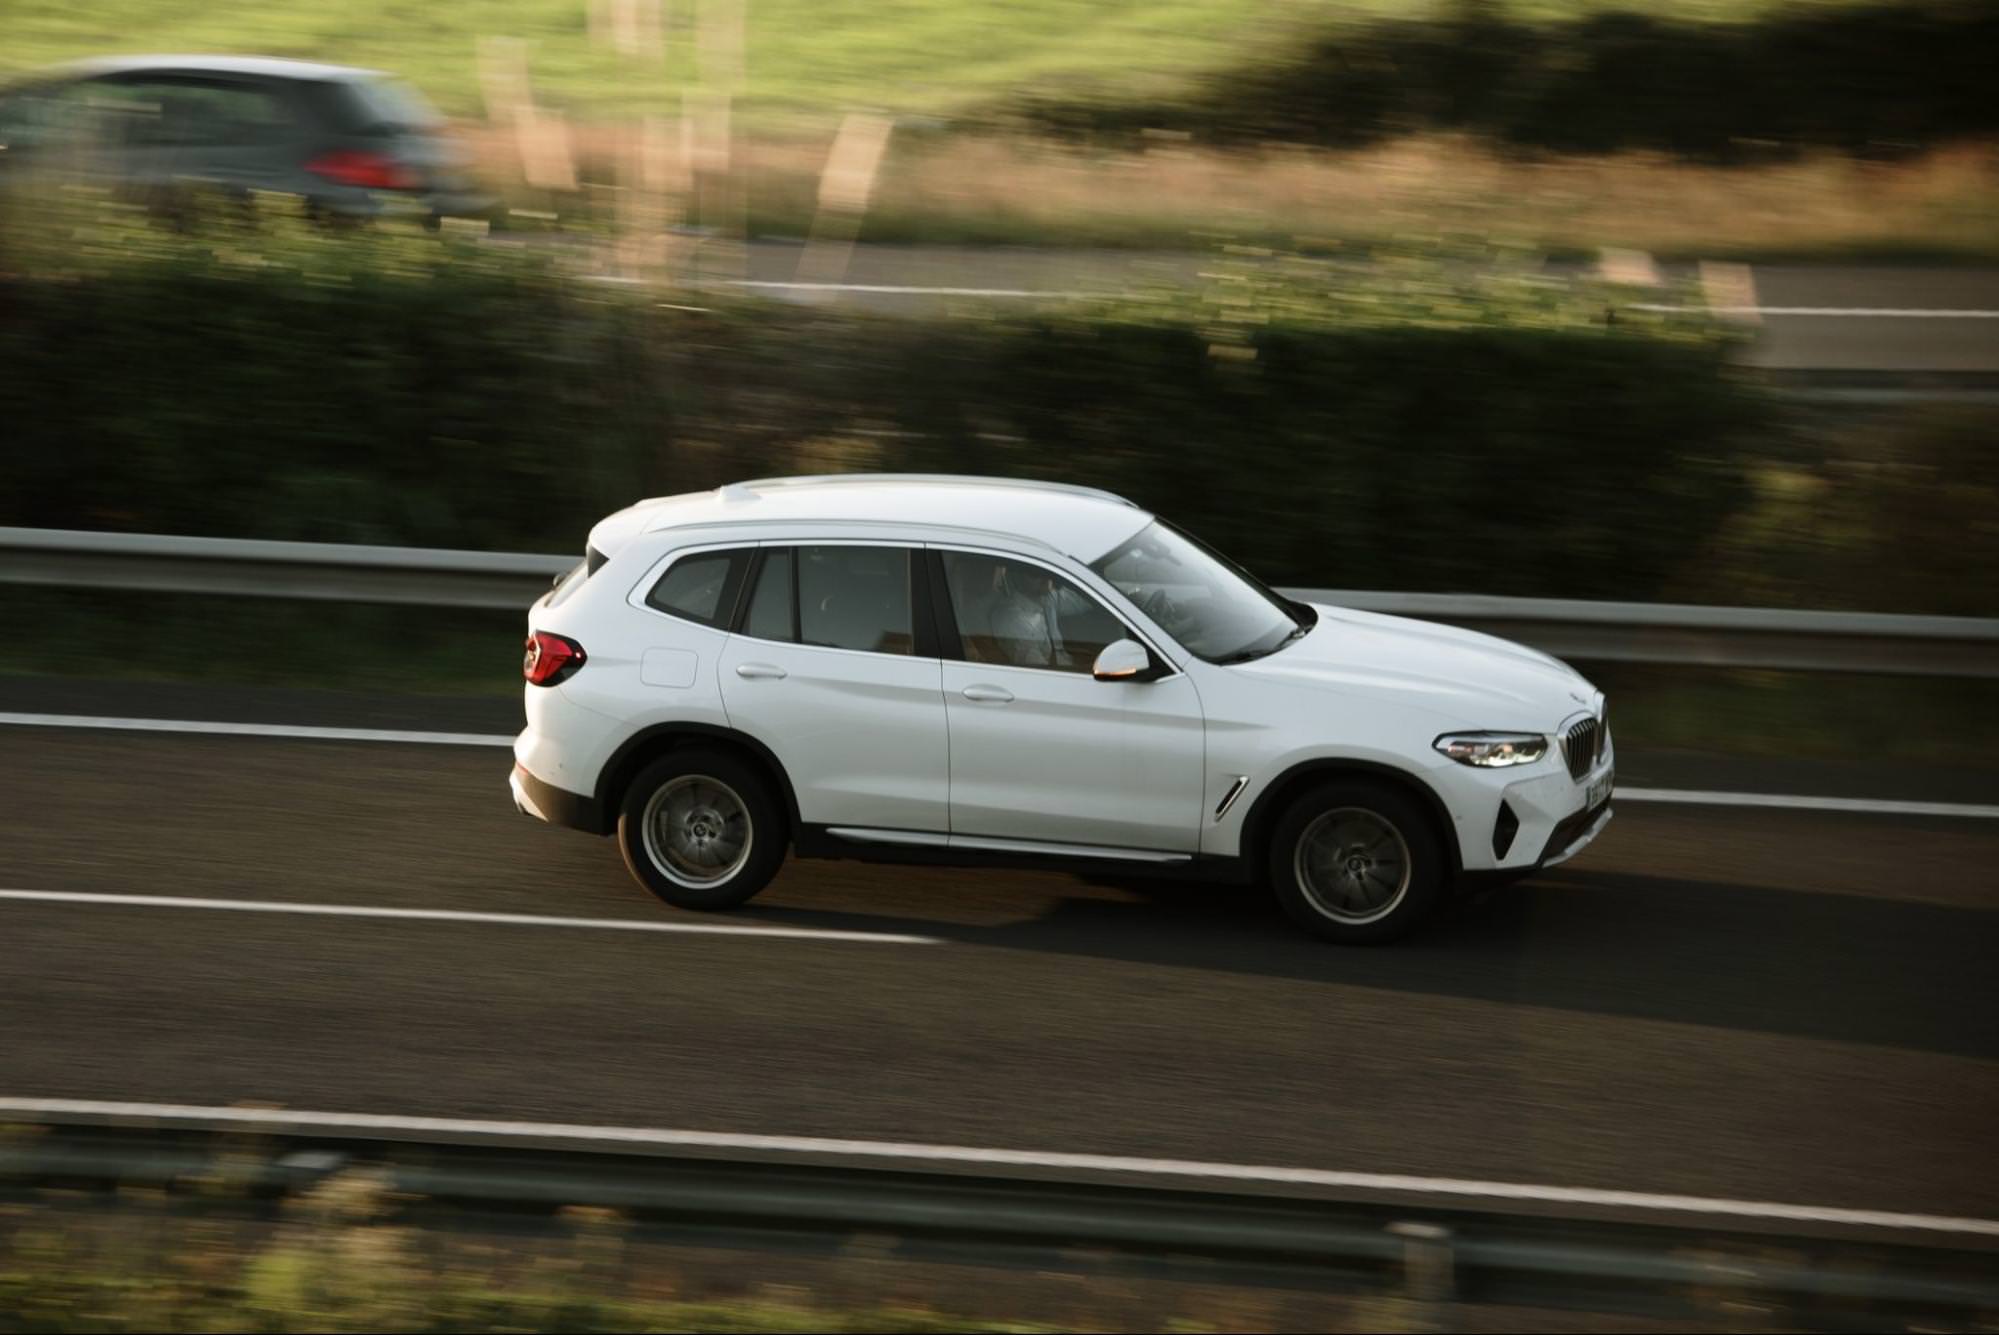 Bílé SUV BMW X3 jedoucí po dálnici, zachycené v pohybu s rozmazaným pozadím.